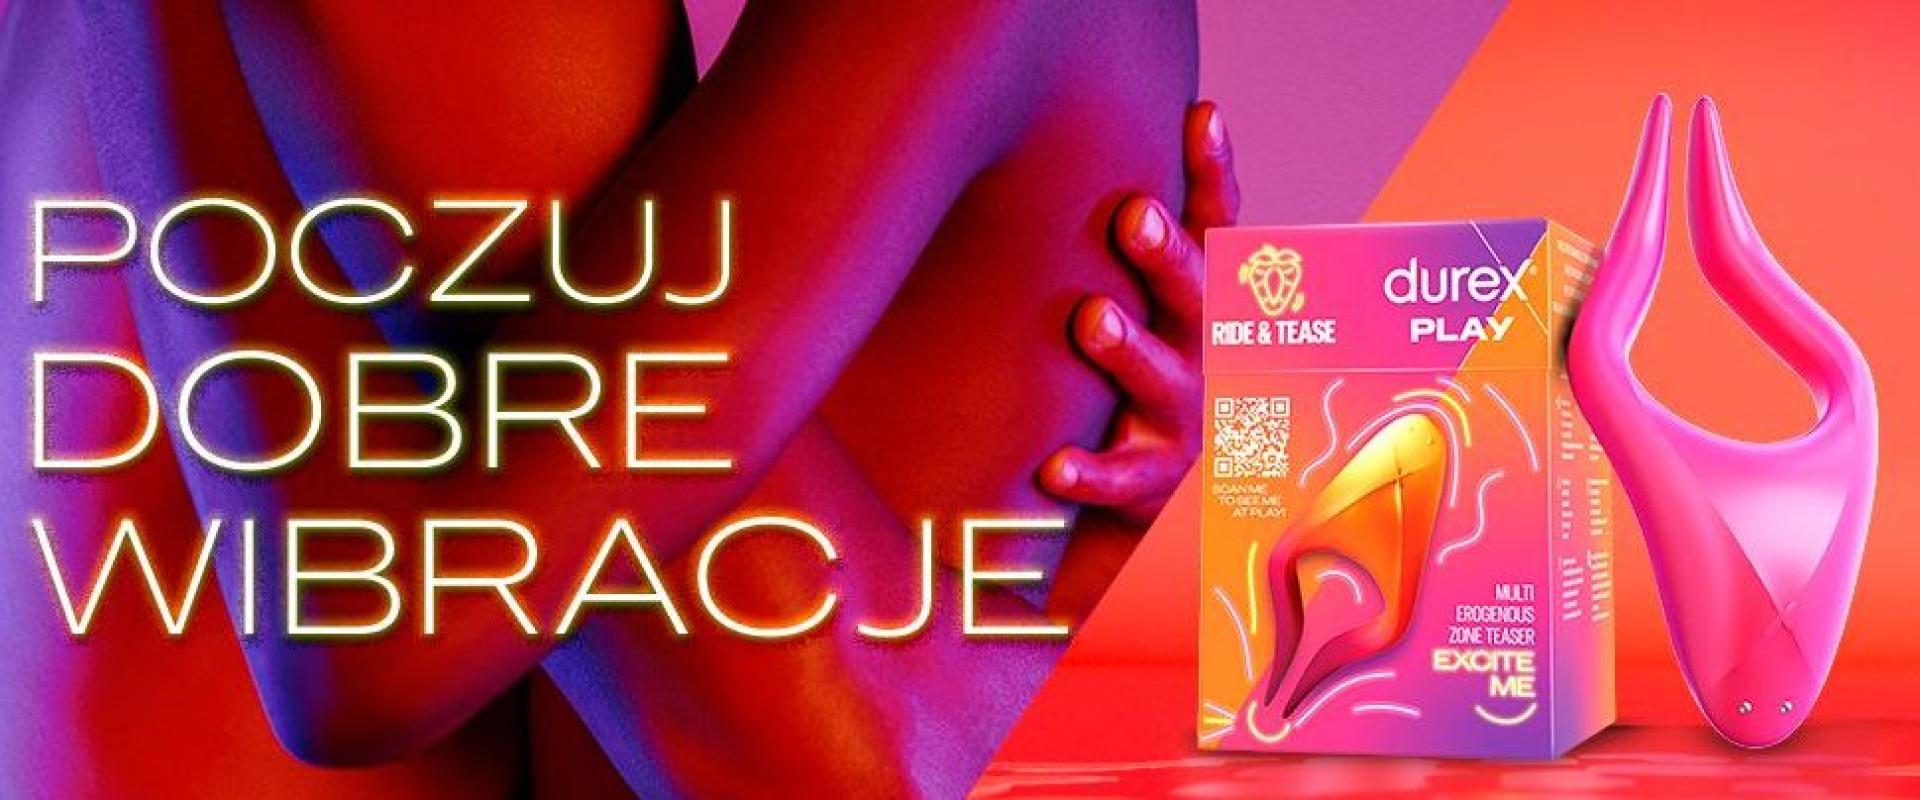 Seks to zdrowie - podkreśla marka Durex